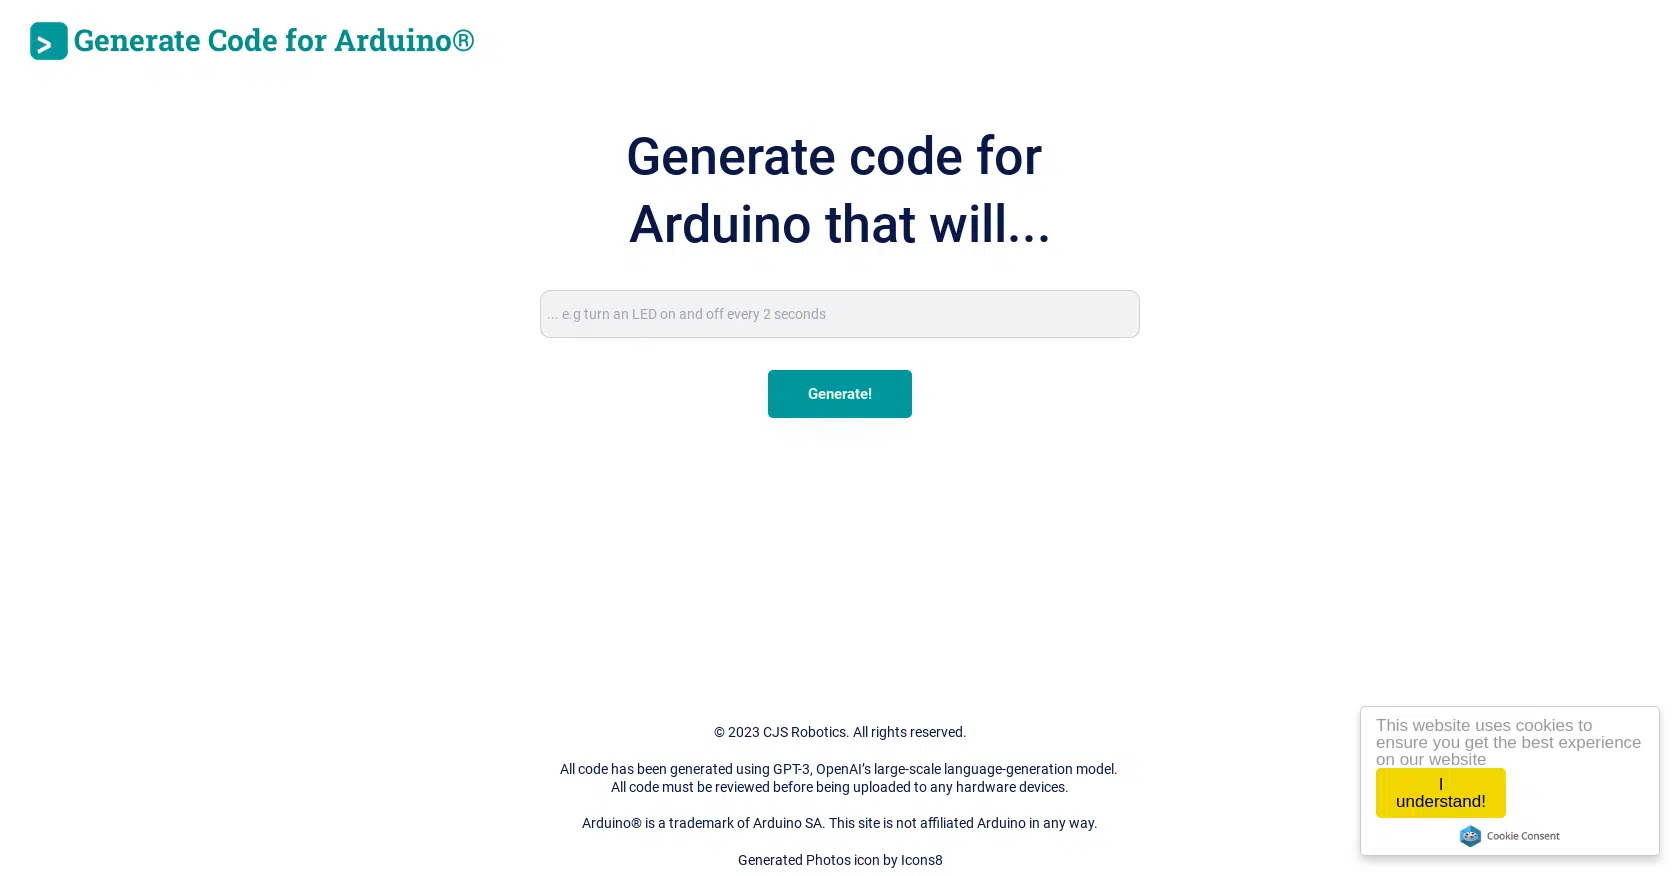 Duino Code Generatorwebsite picture